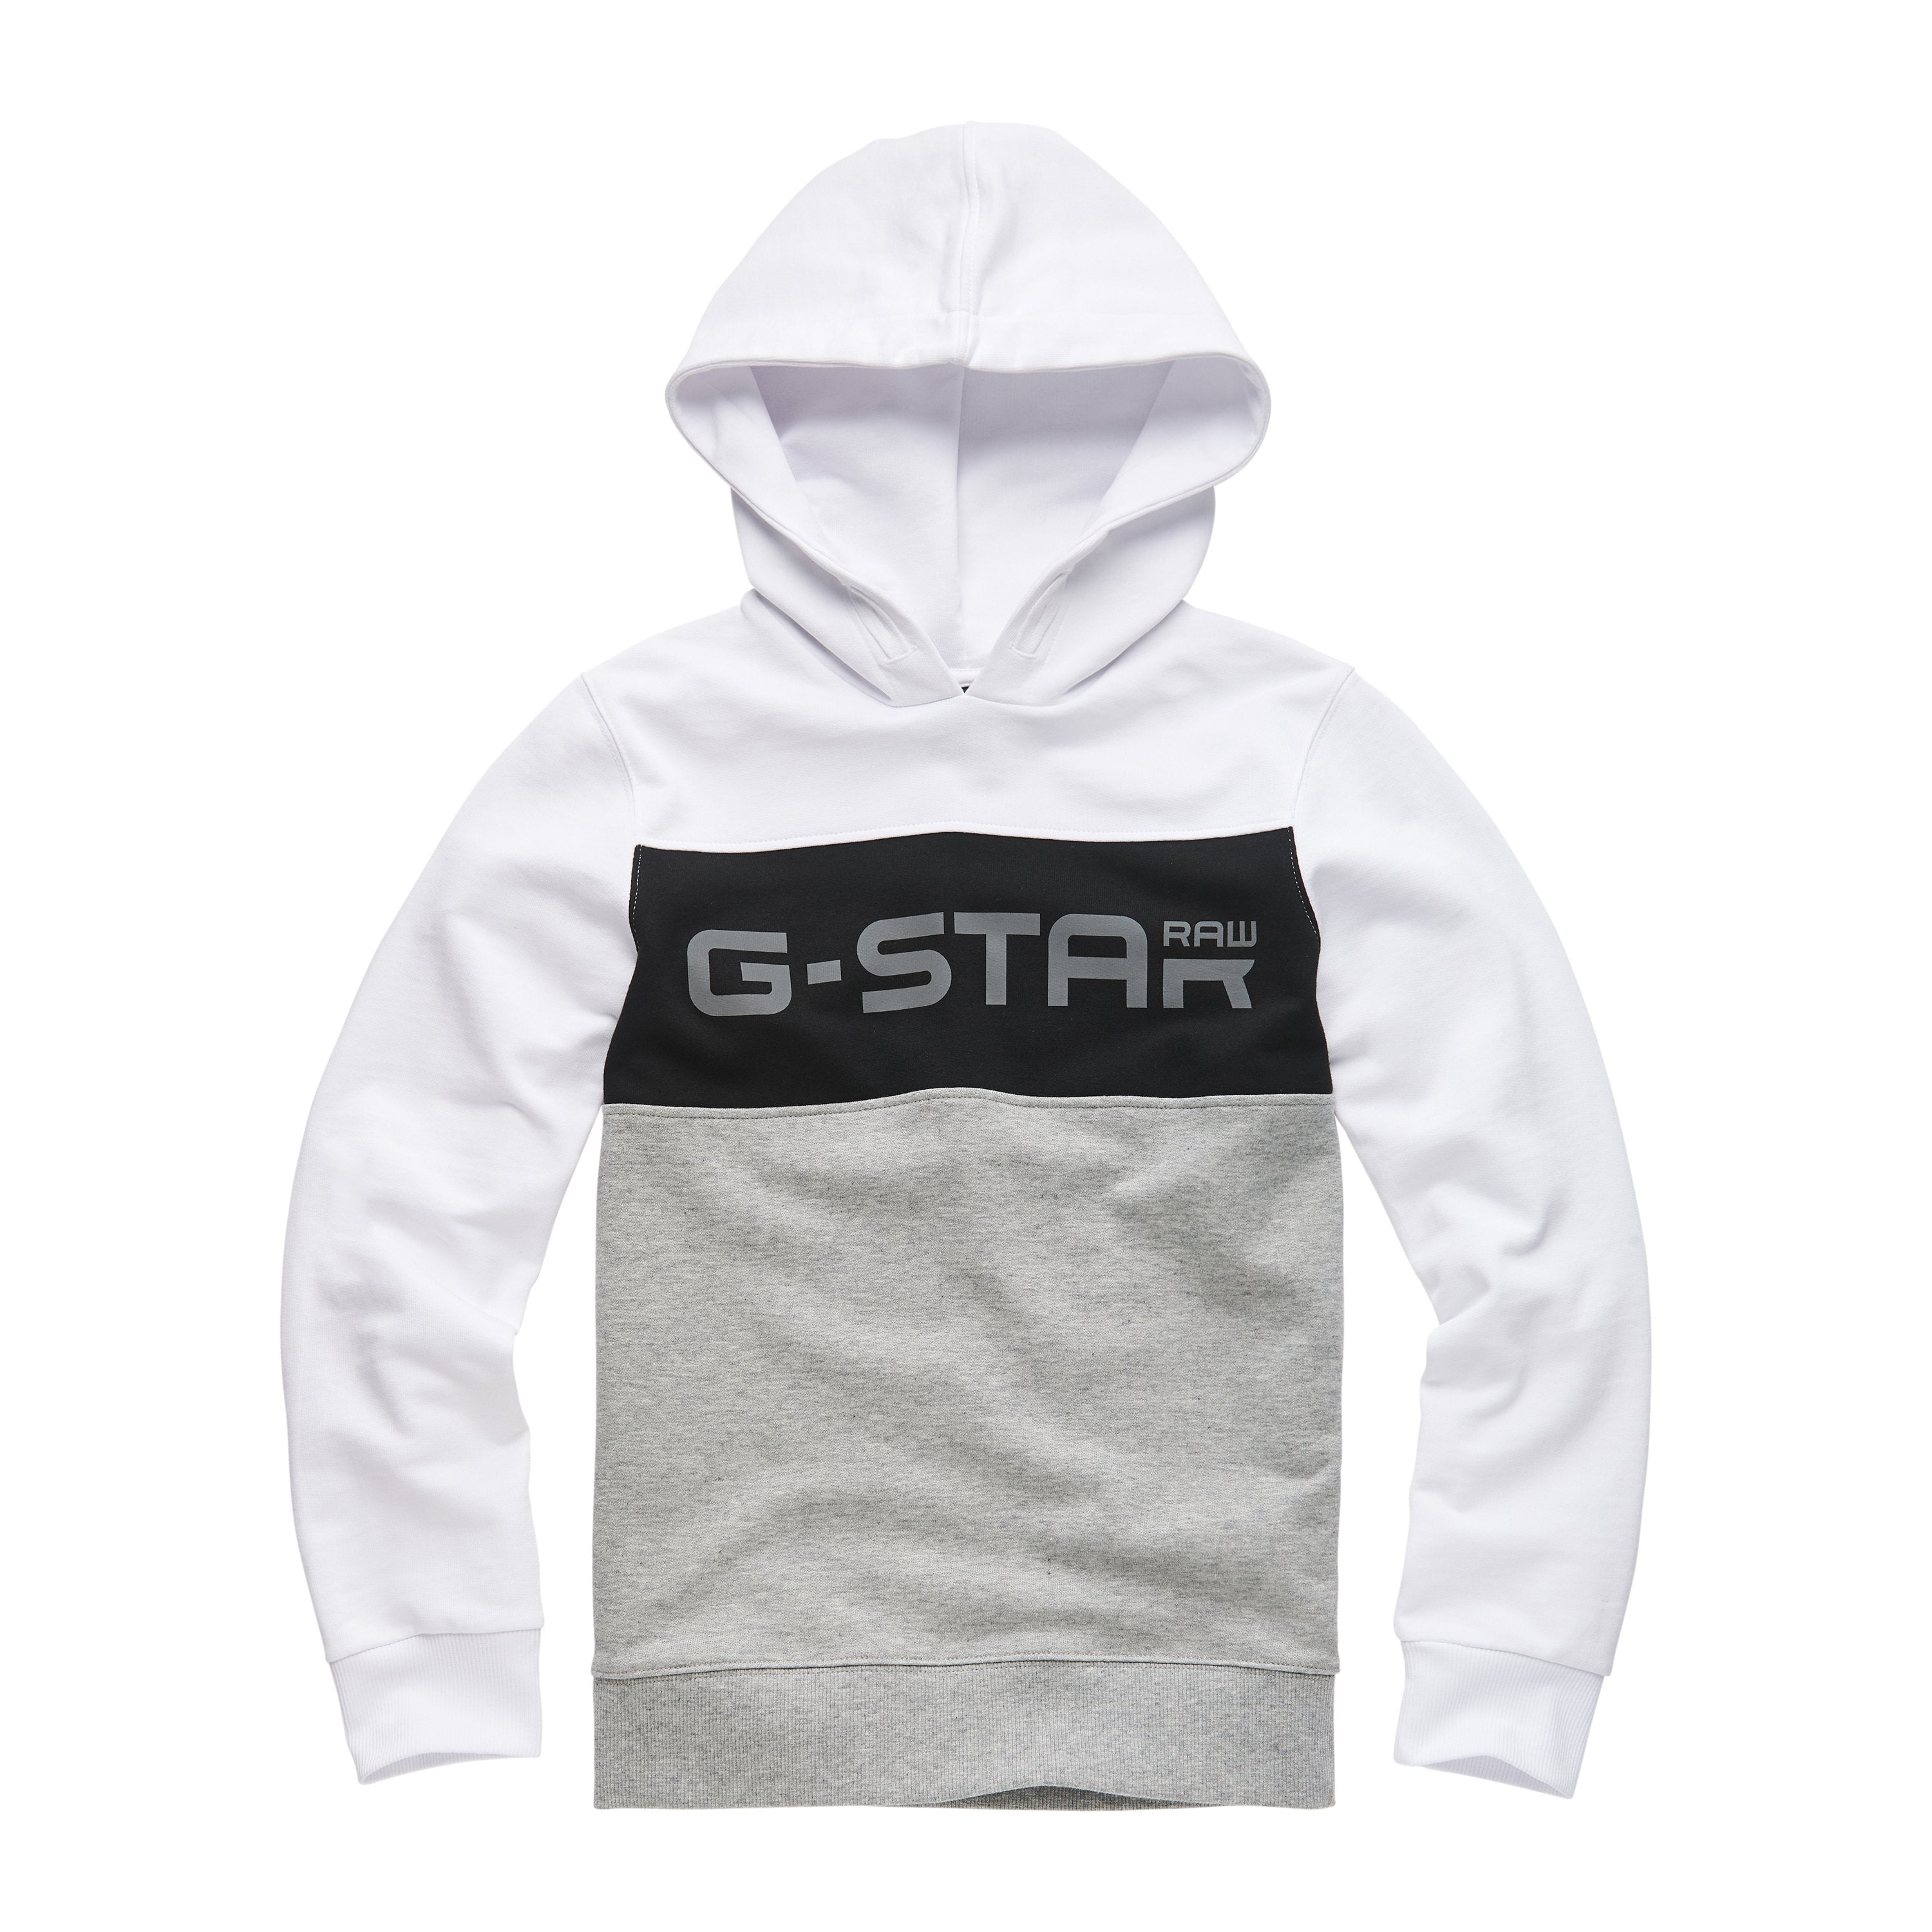 Jongens Sweat Shirt van G-Star Raw in de kleur Industrial Grey in maat 128.